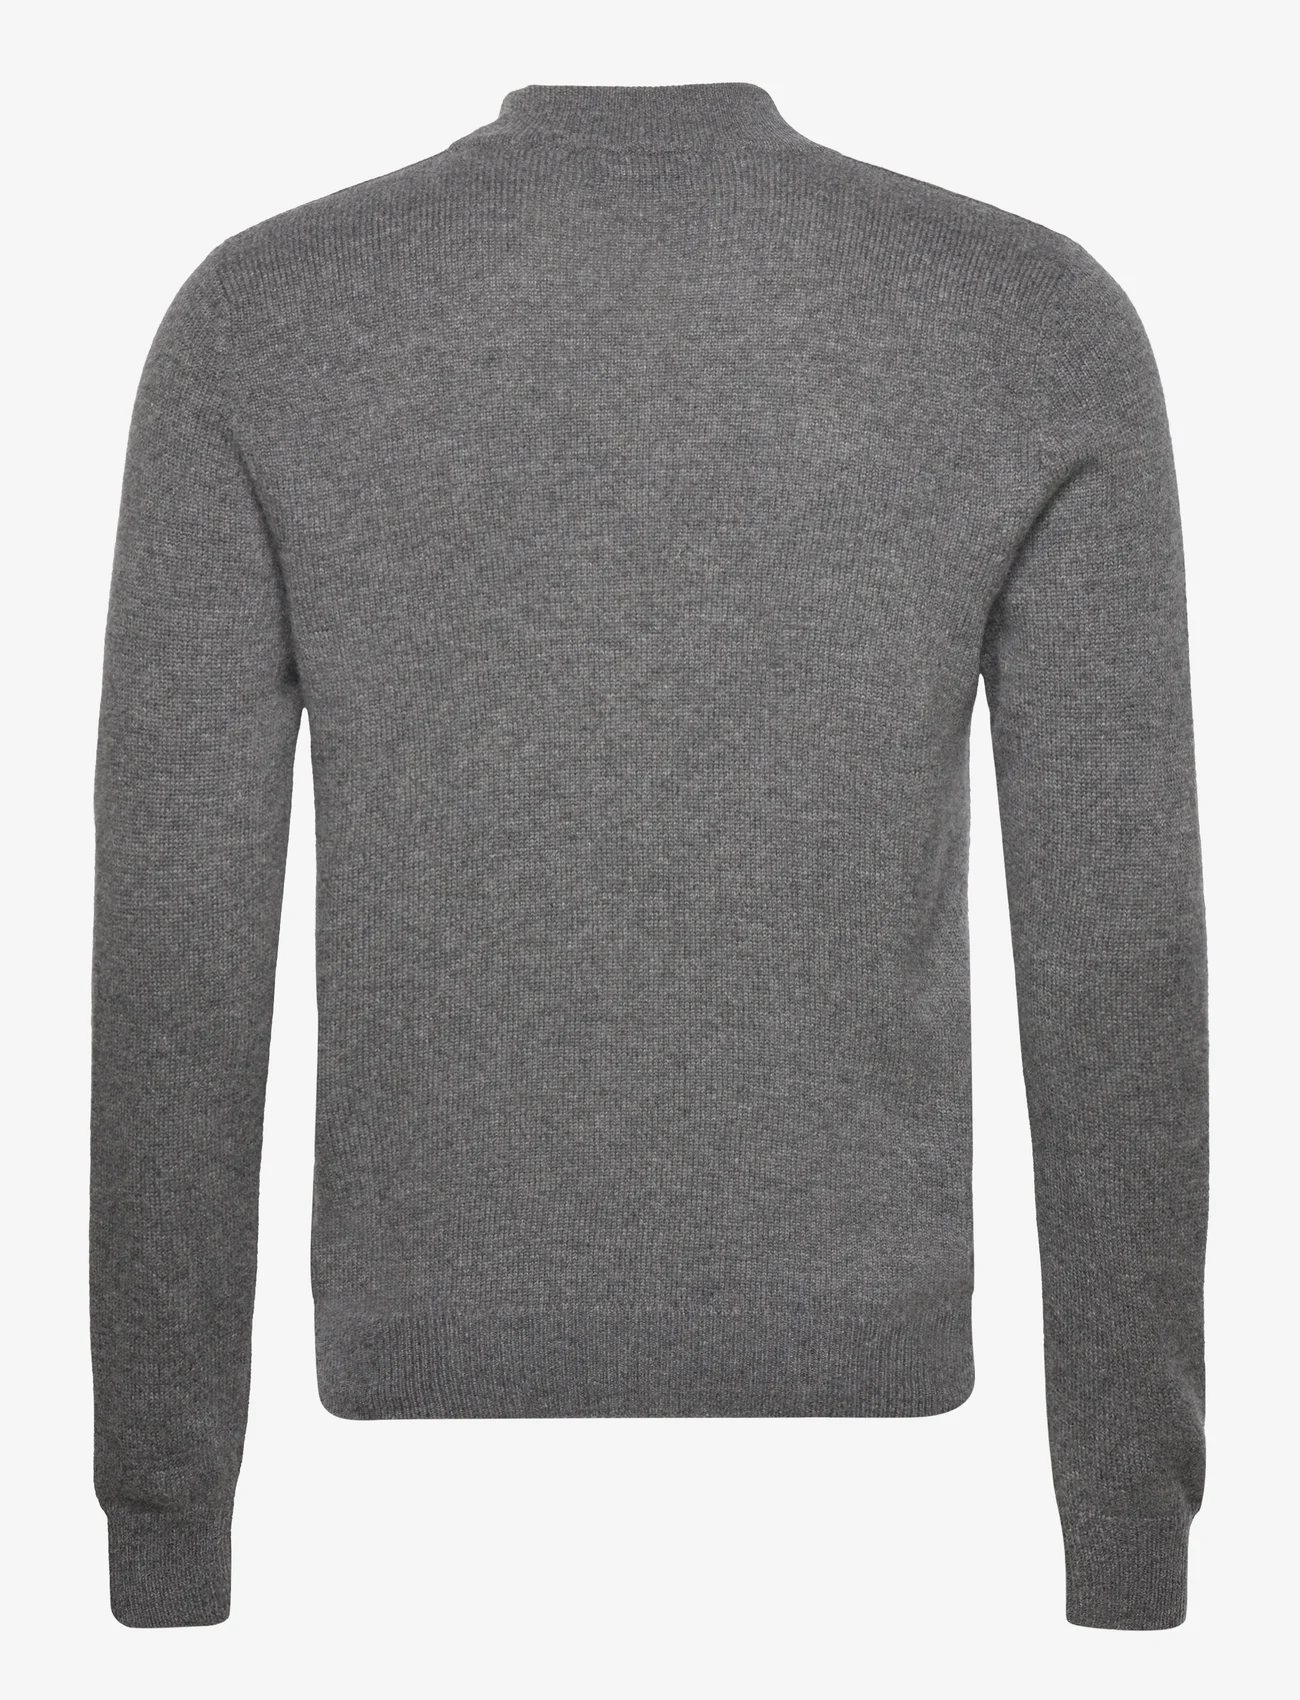 Davida Cashmere - Man Chunky V-neck Sweater - v-ausschnitt - dark grey - 1